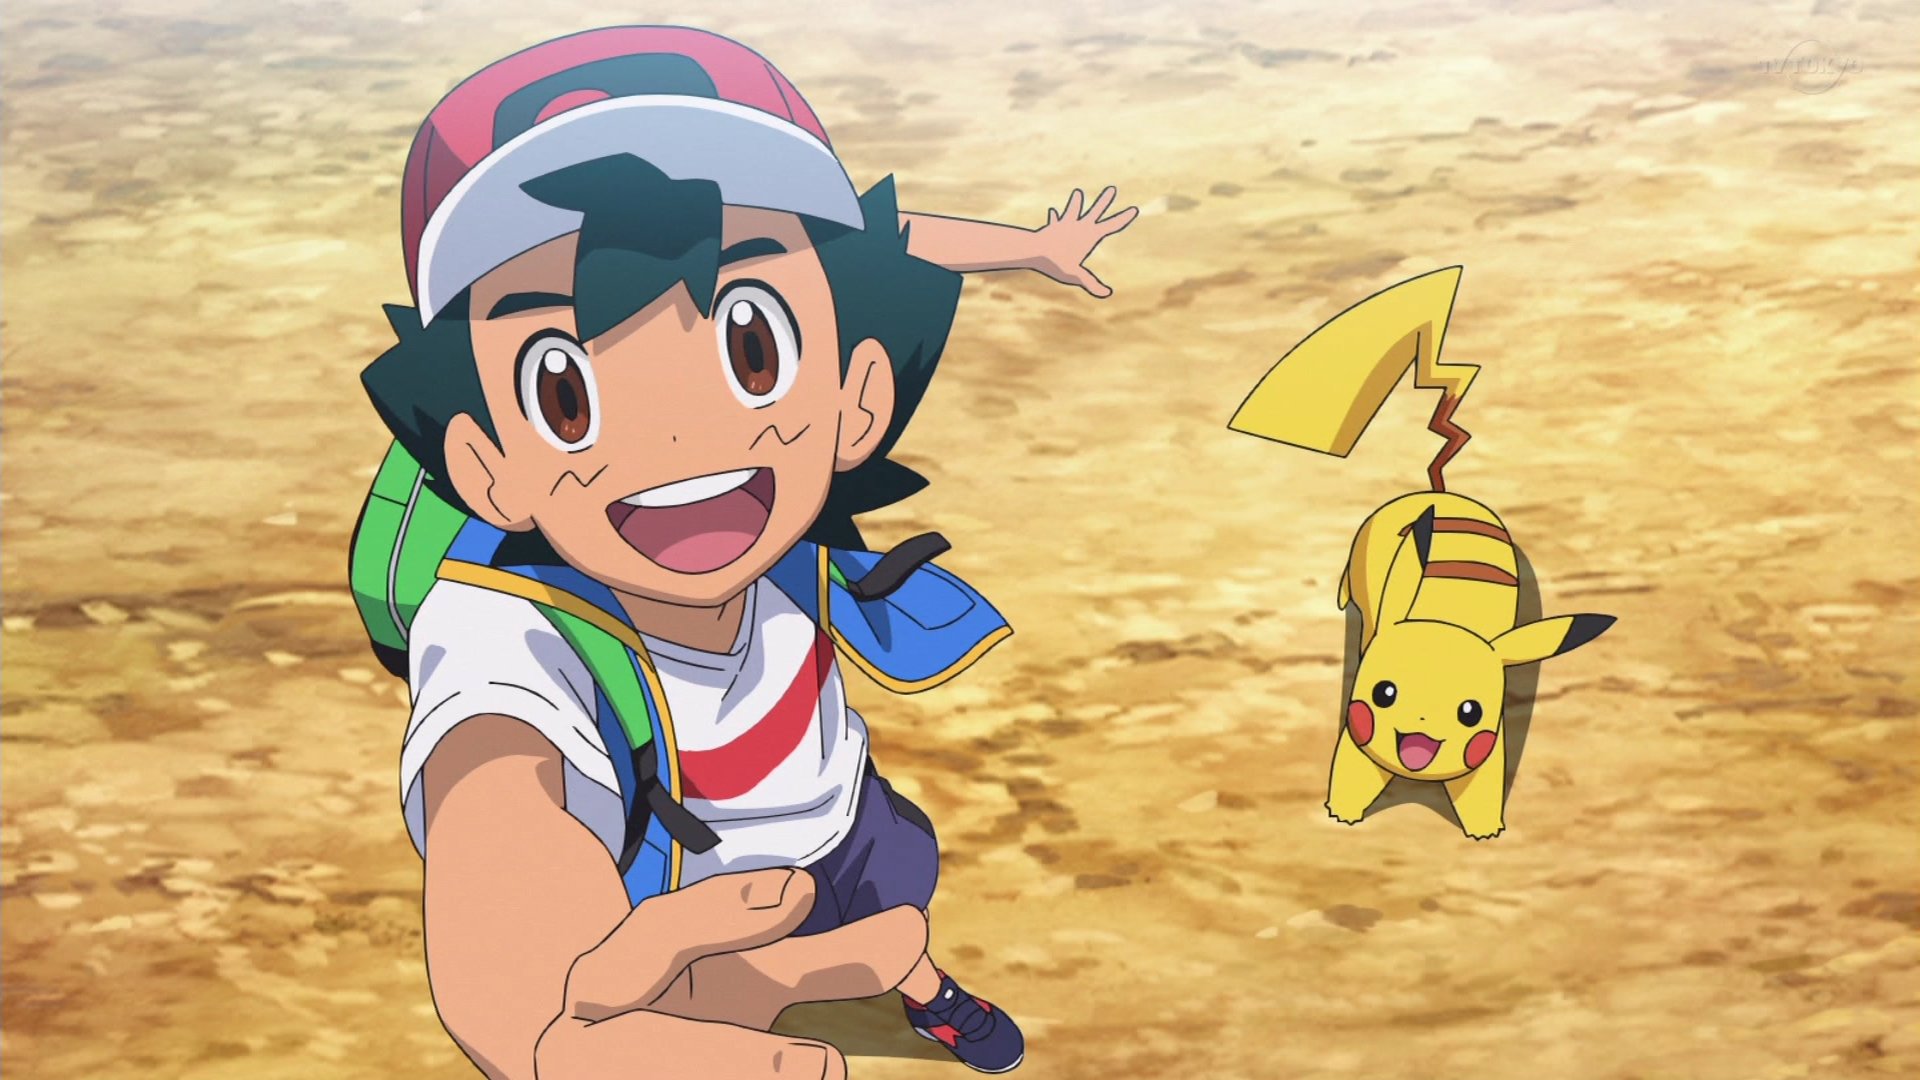 El fin de una era: el viaje de Ash y Pikachu ha terminado tras 26 años de aventuras